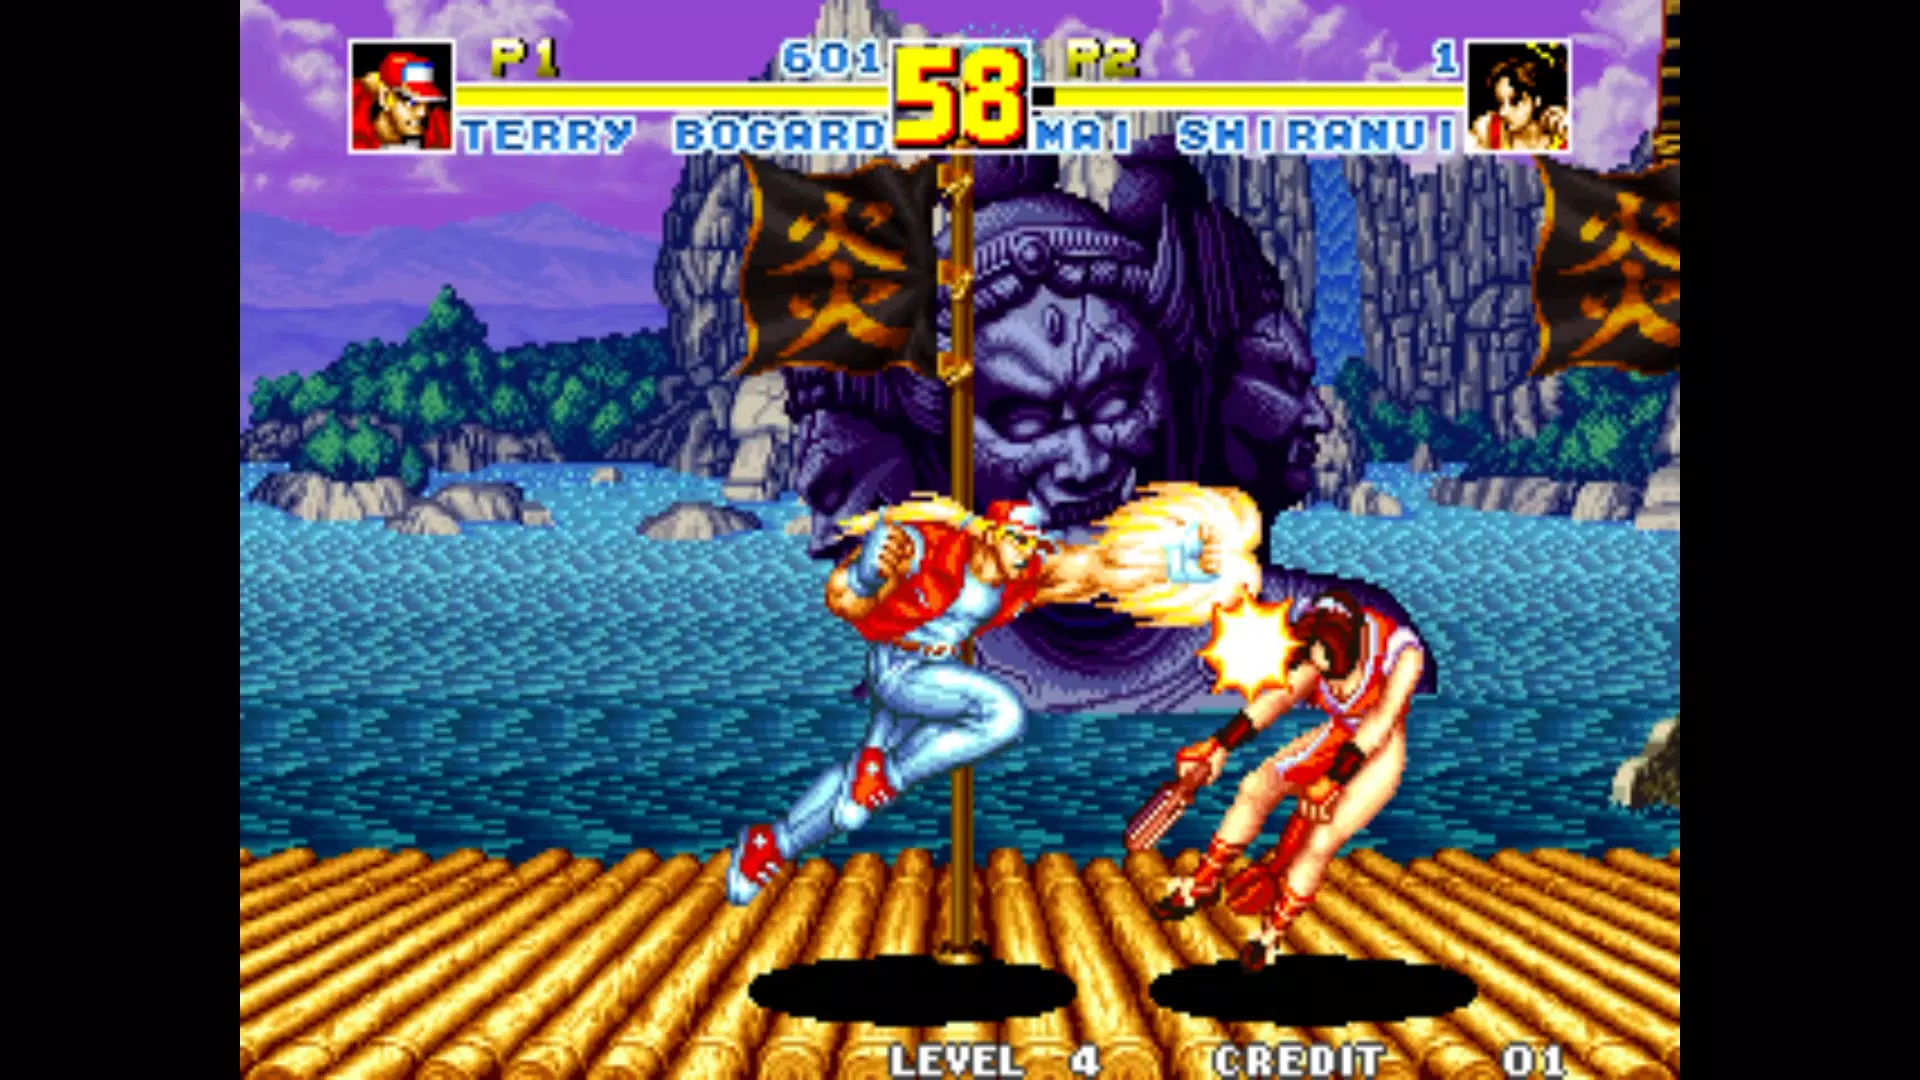 Fatal Fury Special, jogo clássico dos anos 90, chega ao Android e